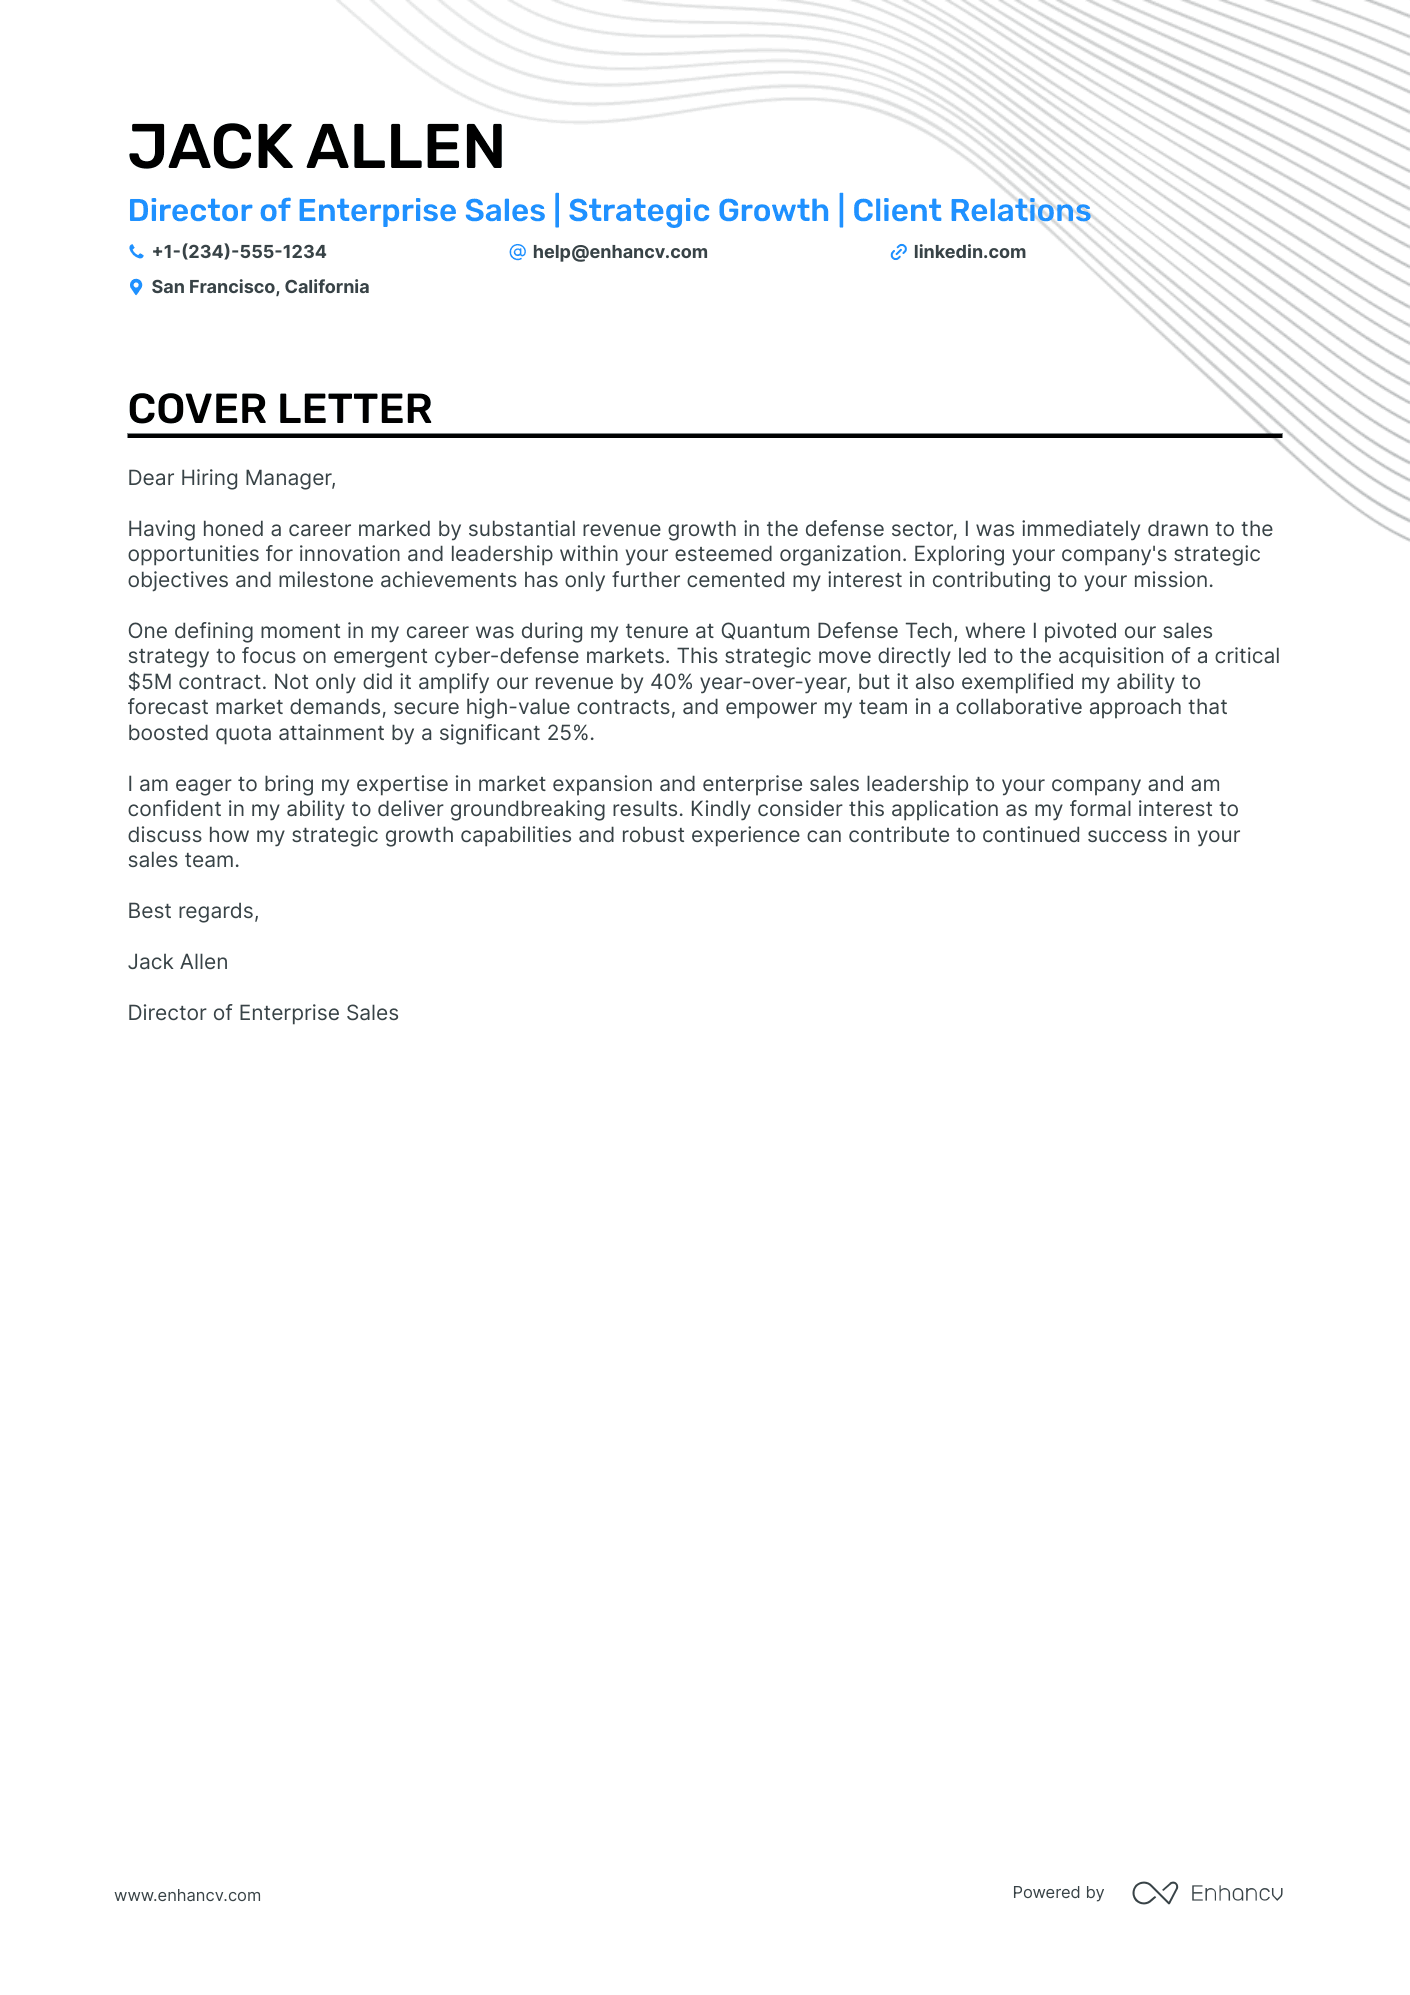 Enterprise Sales cover letter